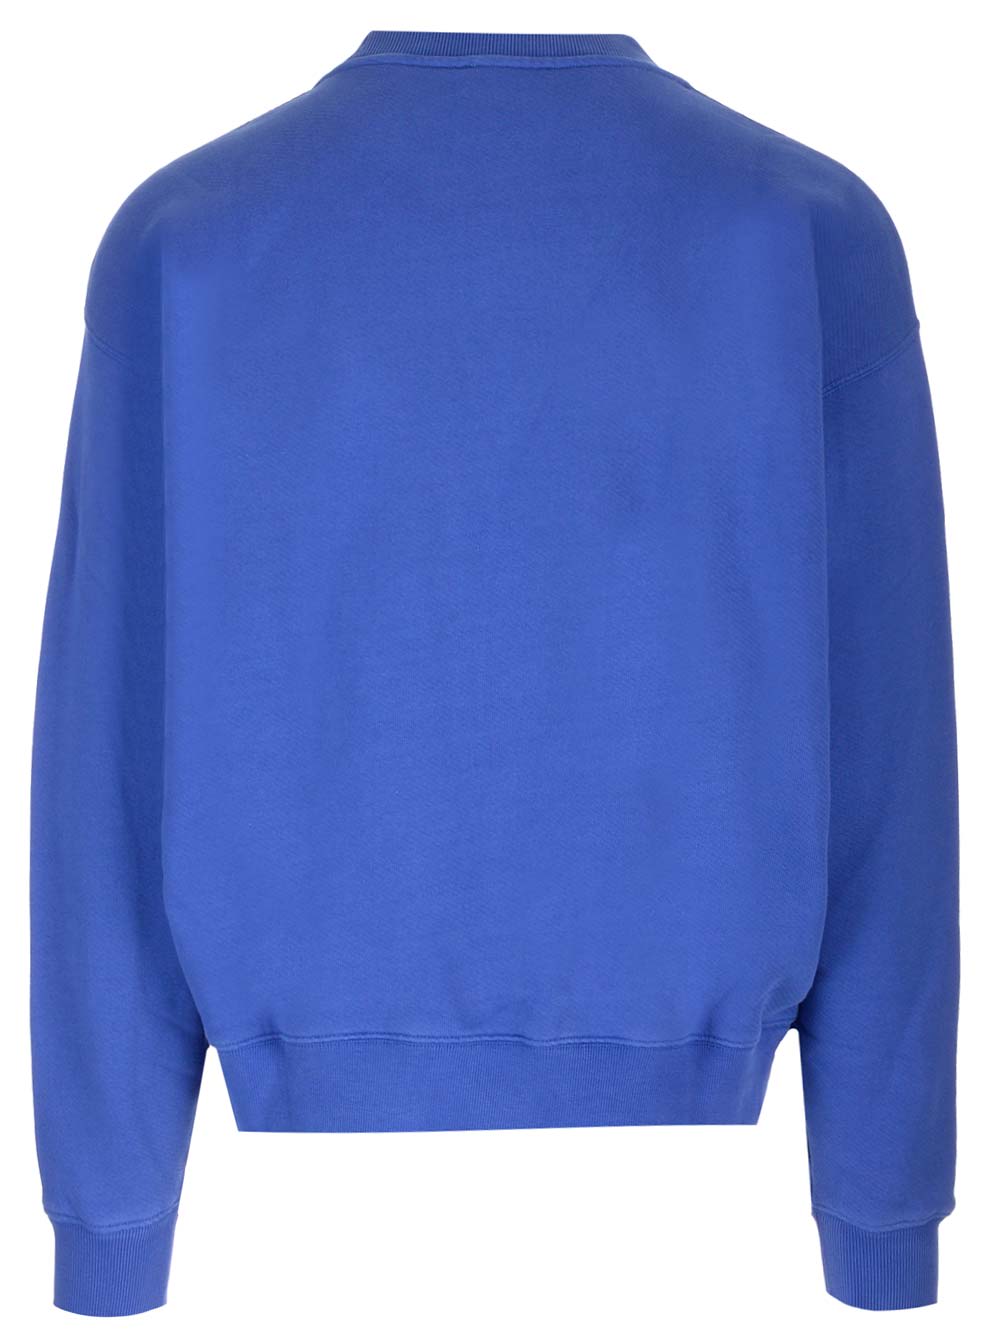 Shop Off-white Blue Off Sweatshirt In Bluette